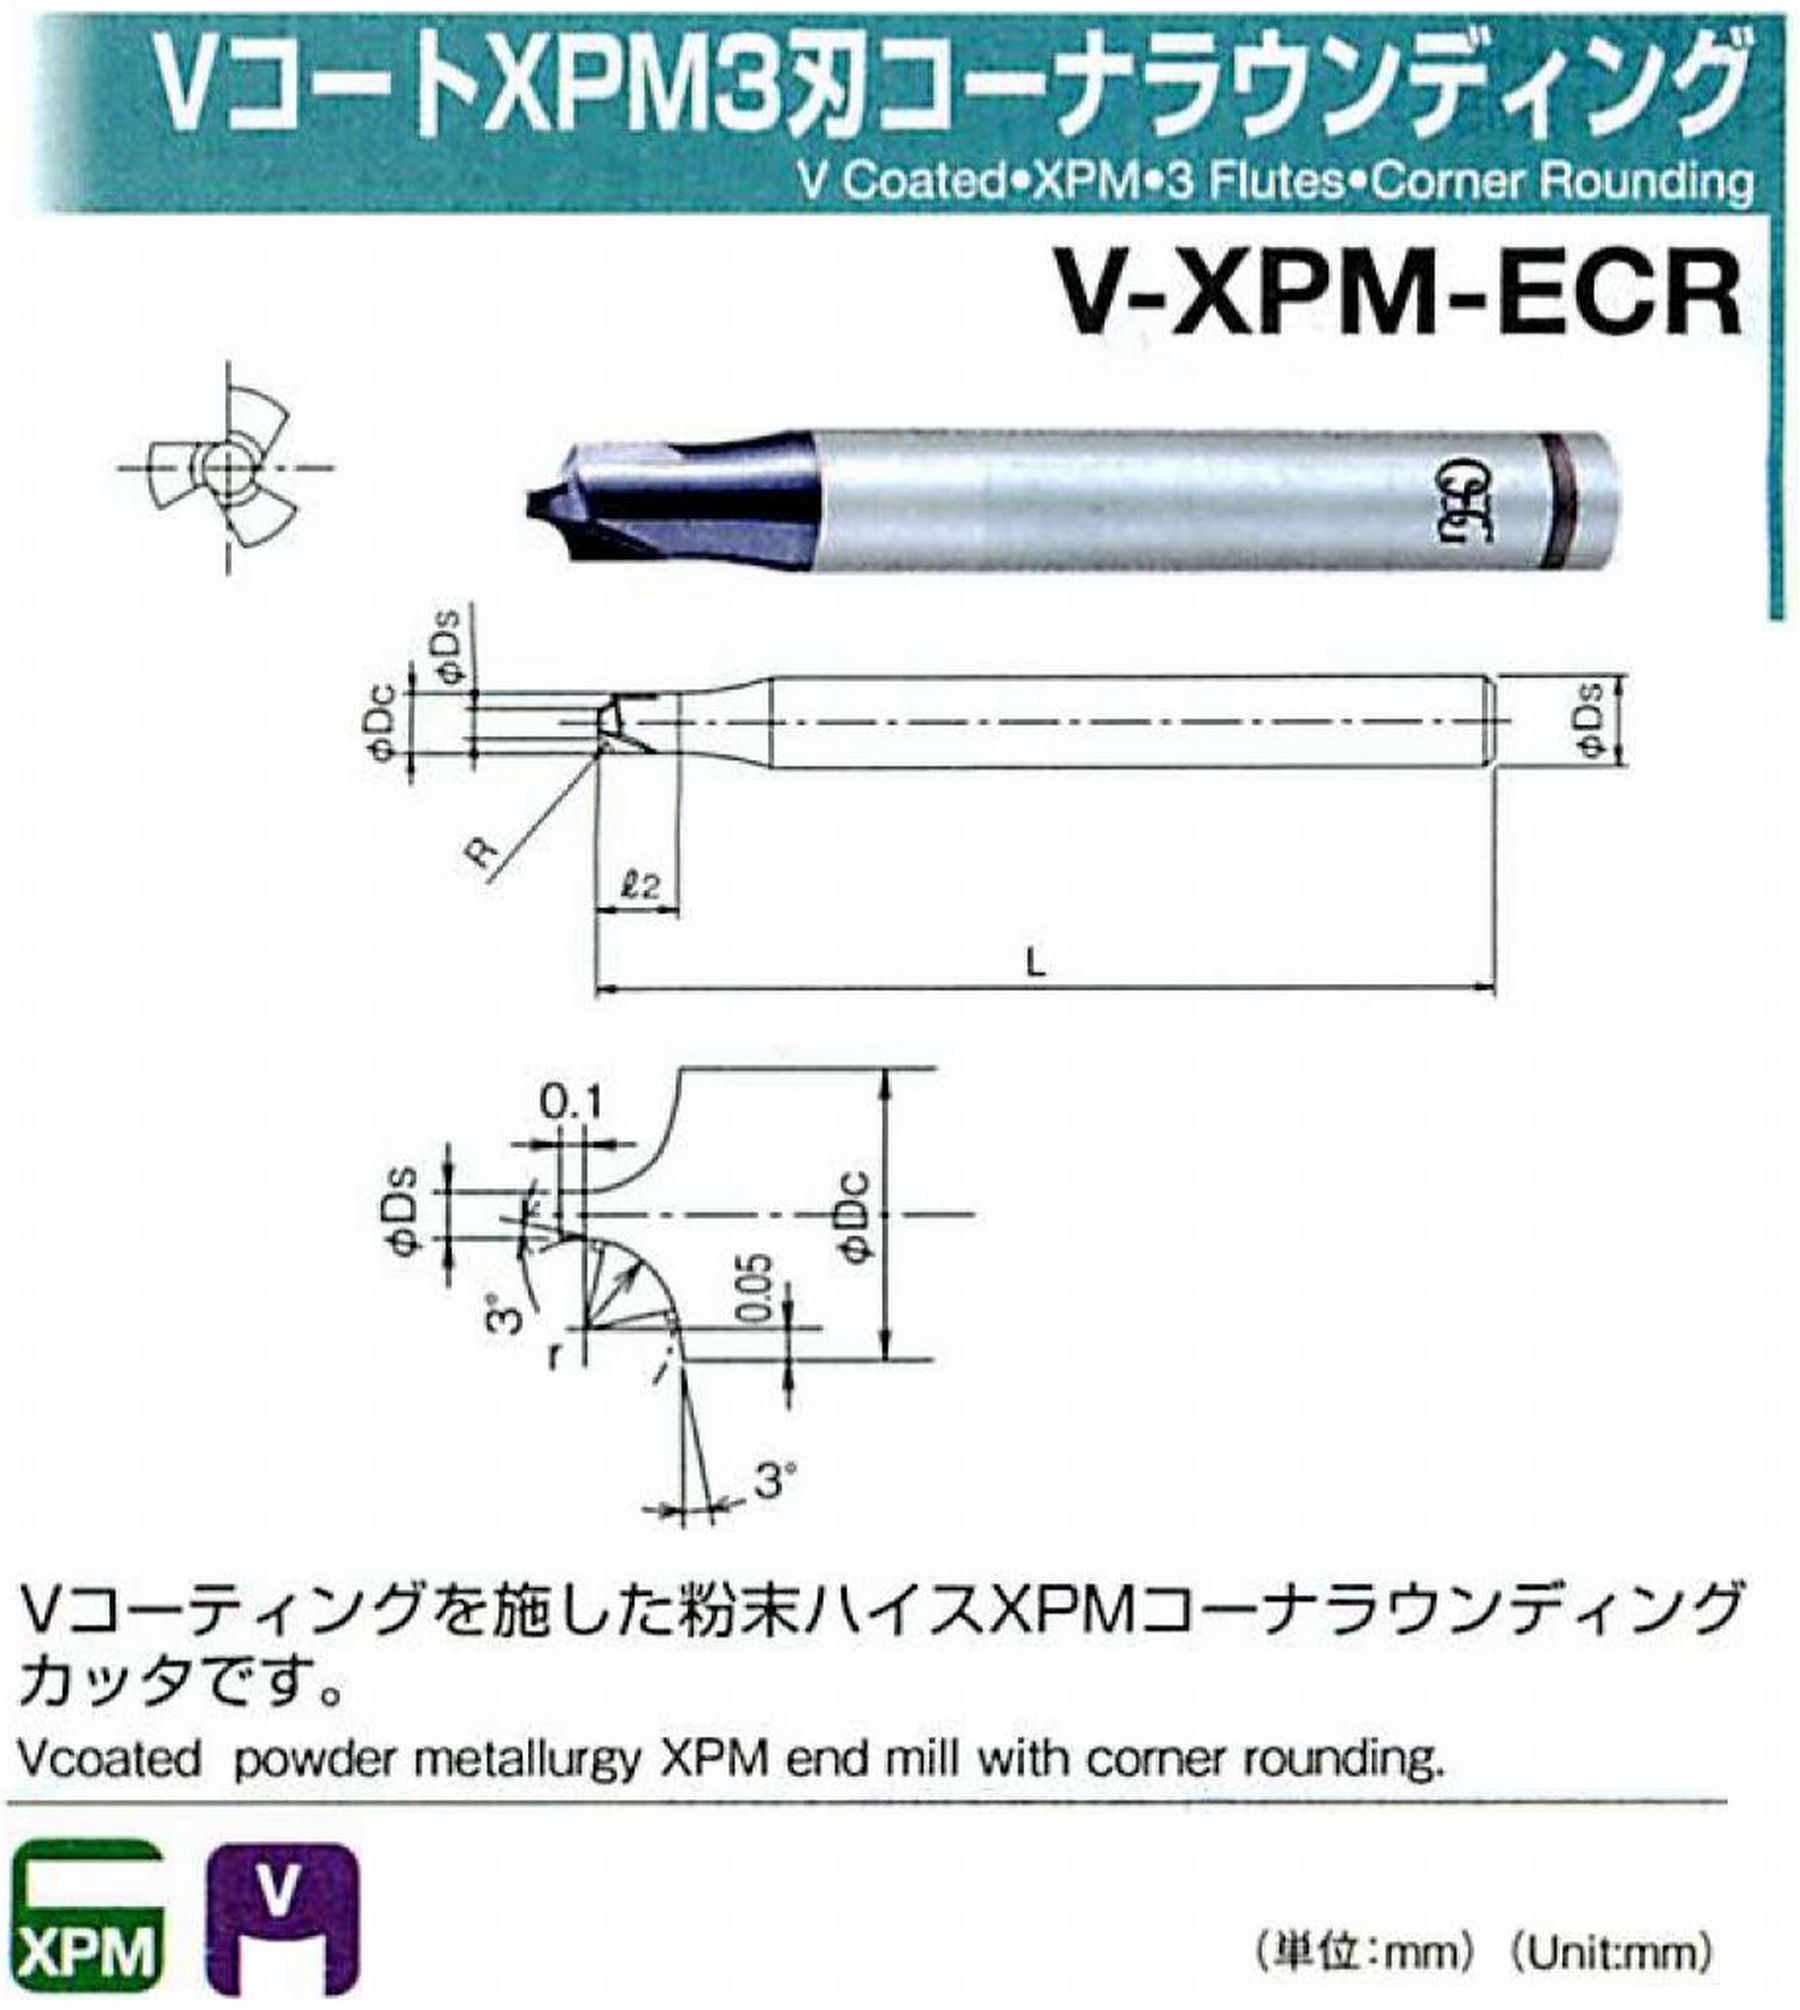 オーエスジー/OSG VコートXPM3刃 コーナラウンディング V-XPM-ECR 先端角×コーナ半径2×R0.5 外径3 全長60 シャンク径6mm 首下長4